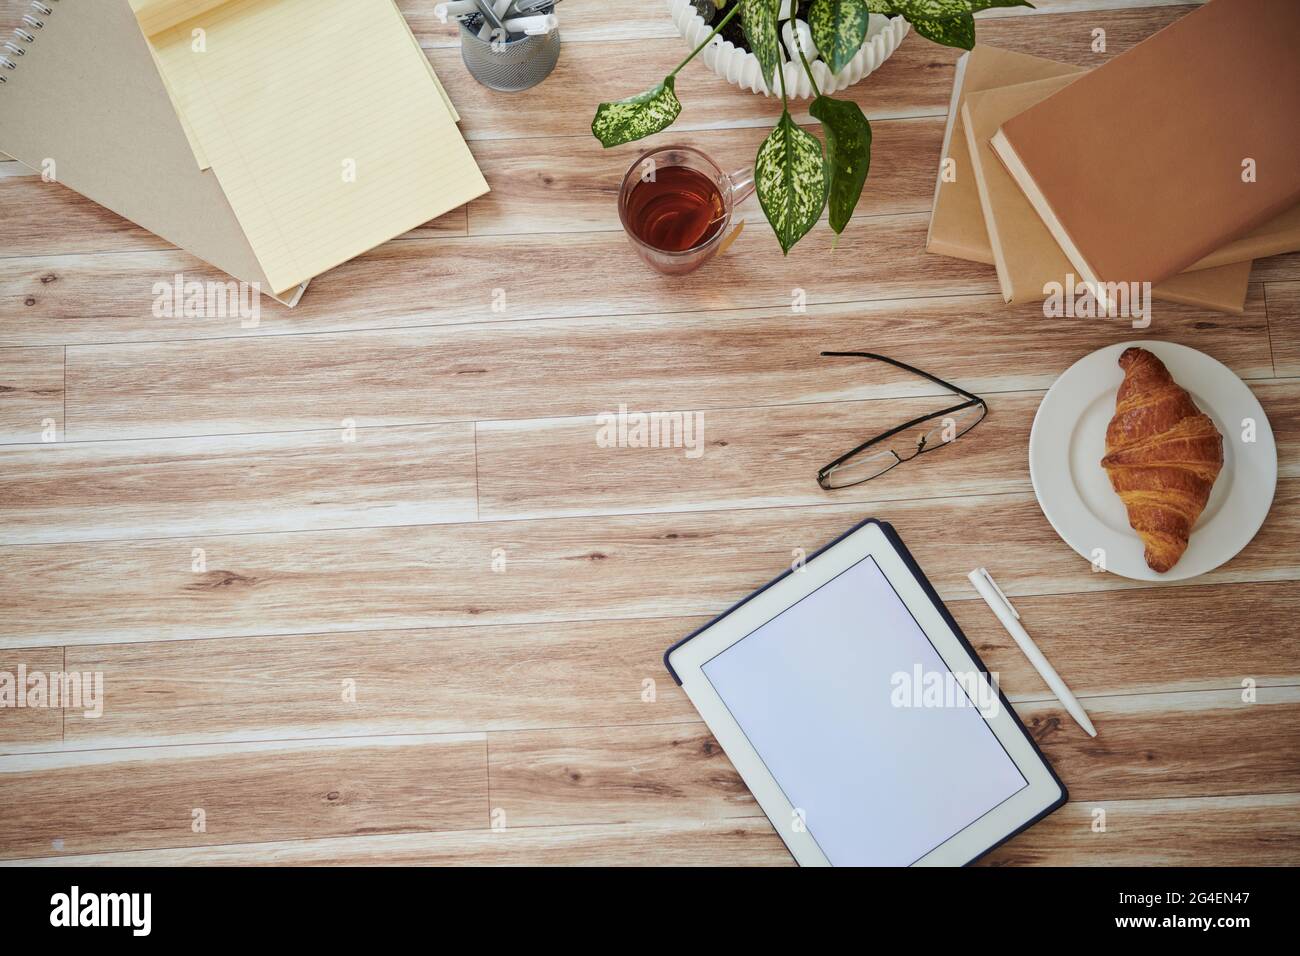 Tablet-Computer mit leerem Bildschirm, Büchern, Croissants und Gläsern auf dem Tisch, Blick von oben Stockfoto